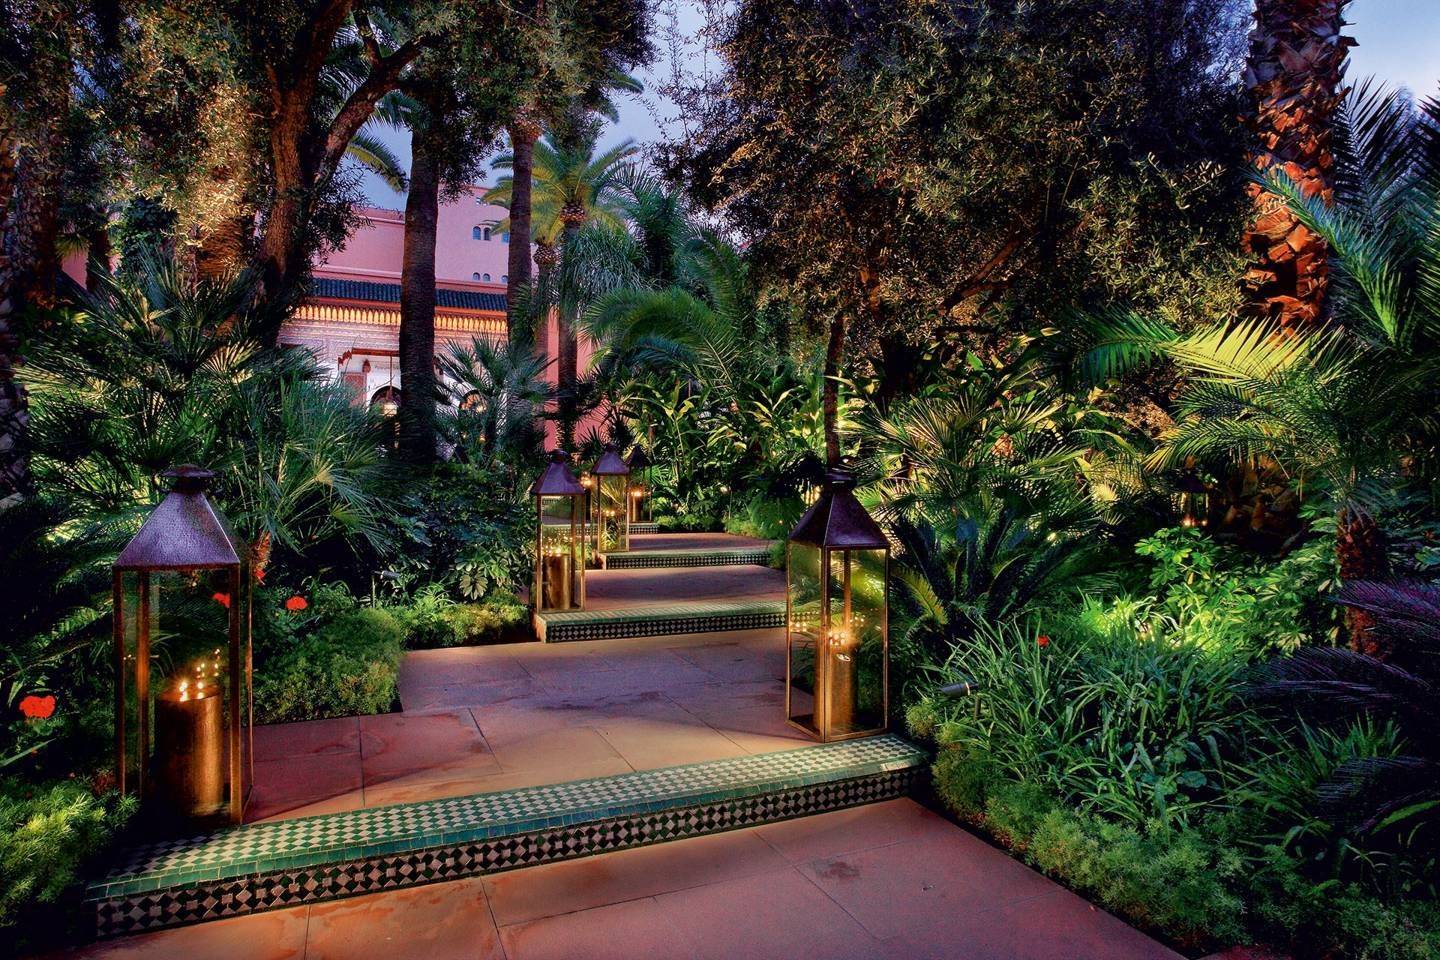 Elegant Morocco Themed Garden Ideas